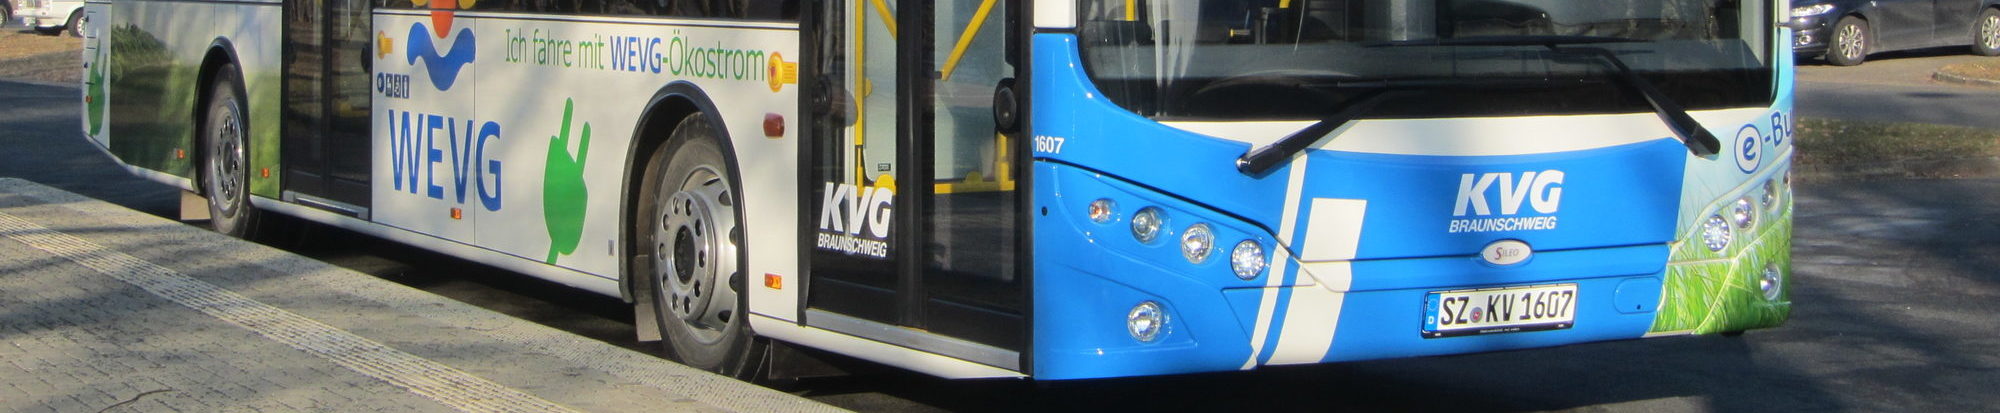 Bild eines KVG-Busses